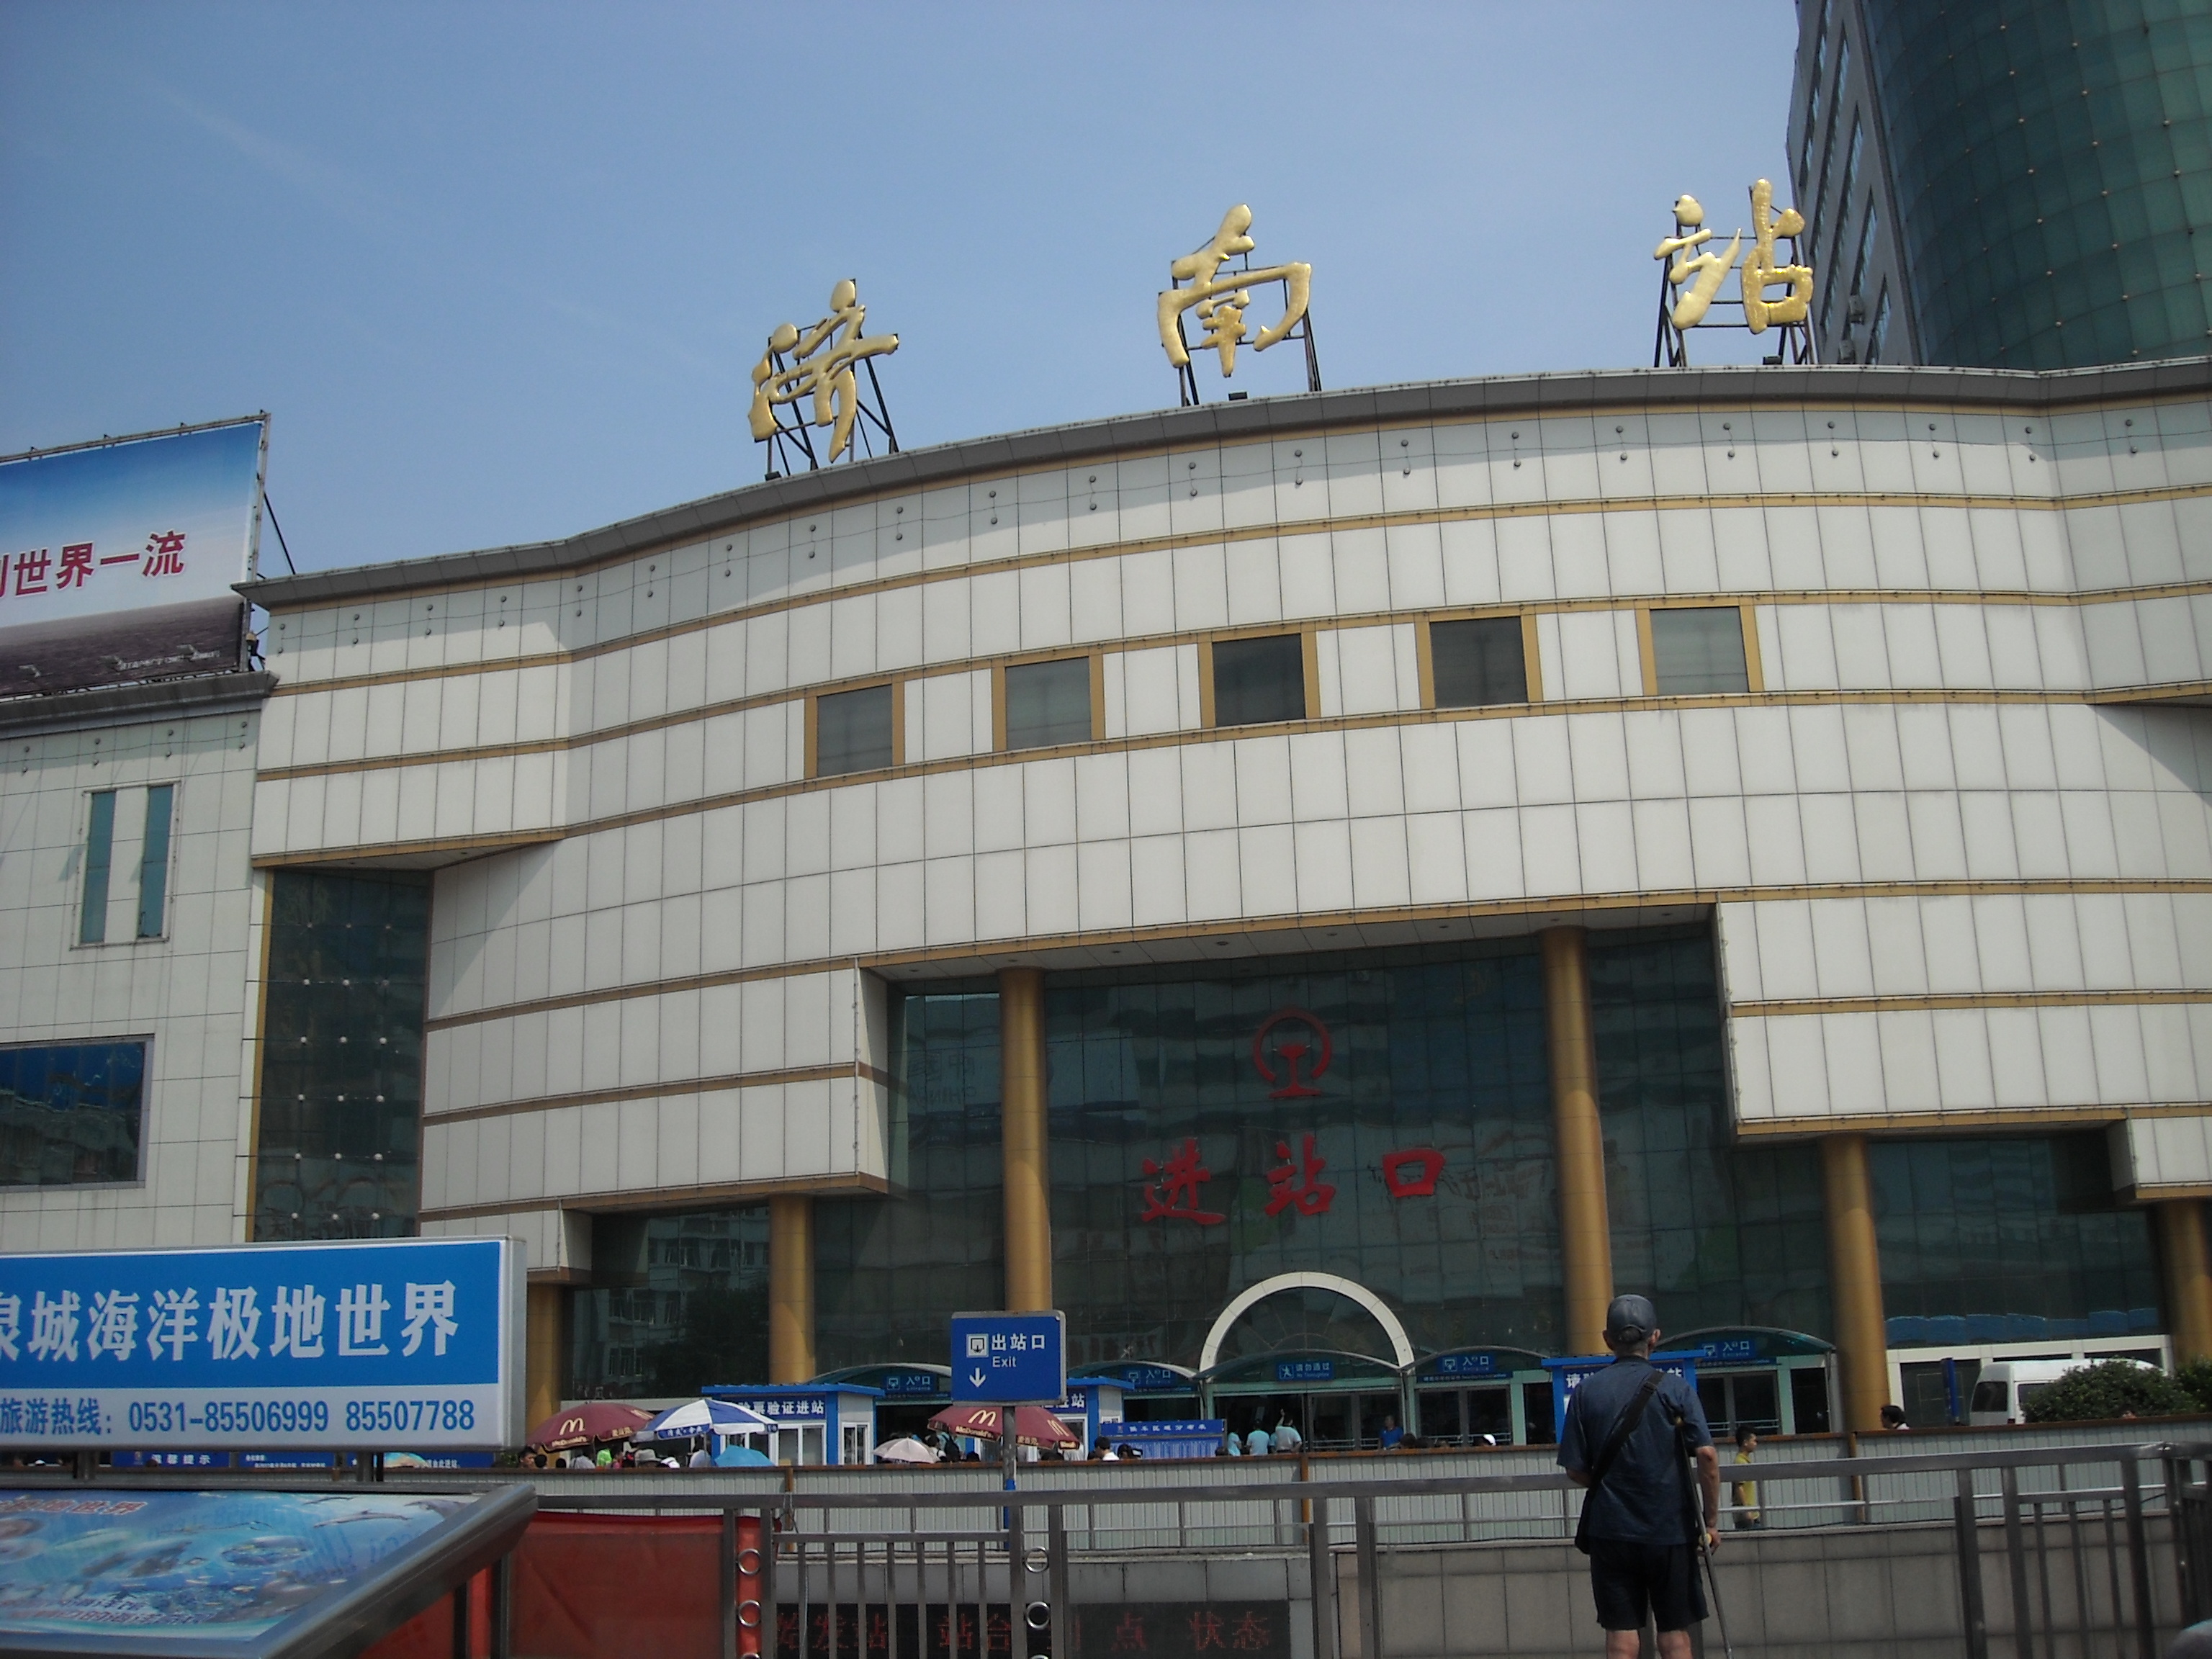 济南火车站旅游图片,济南火车站自助游图片,济南火车站旅游景点照片